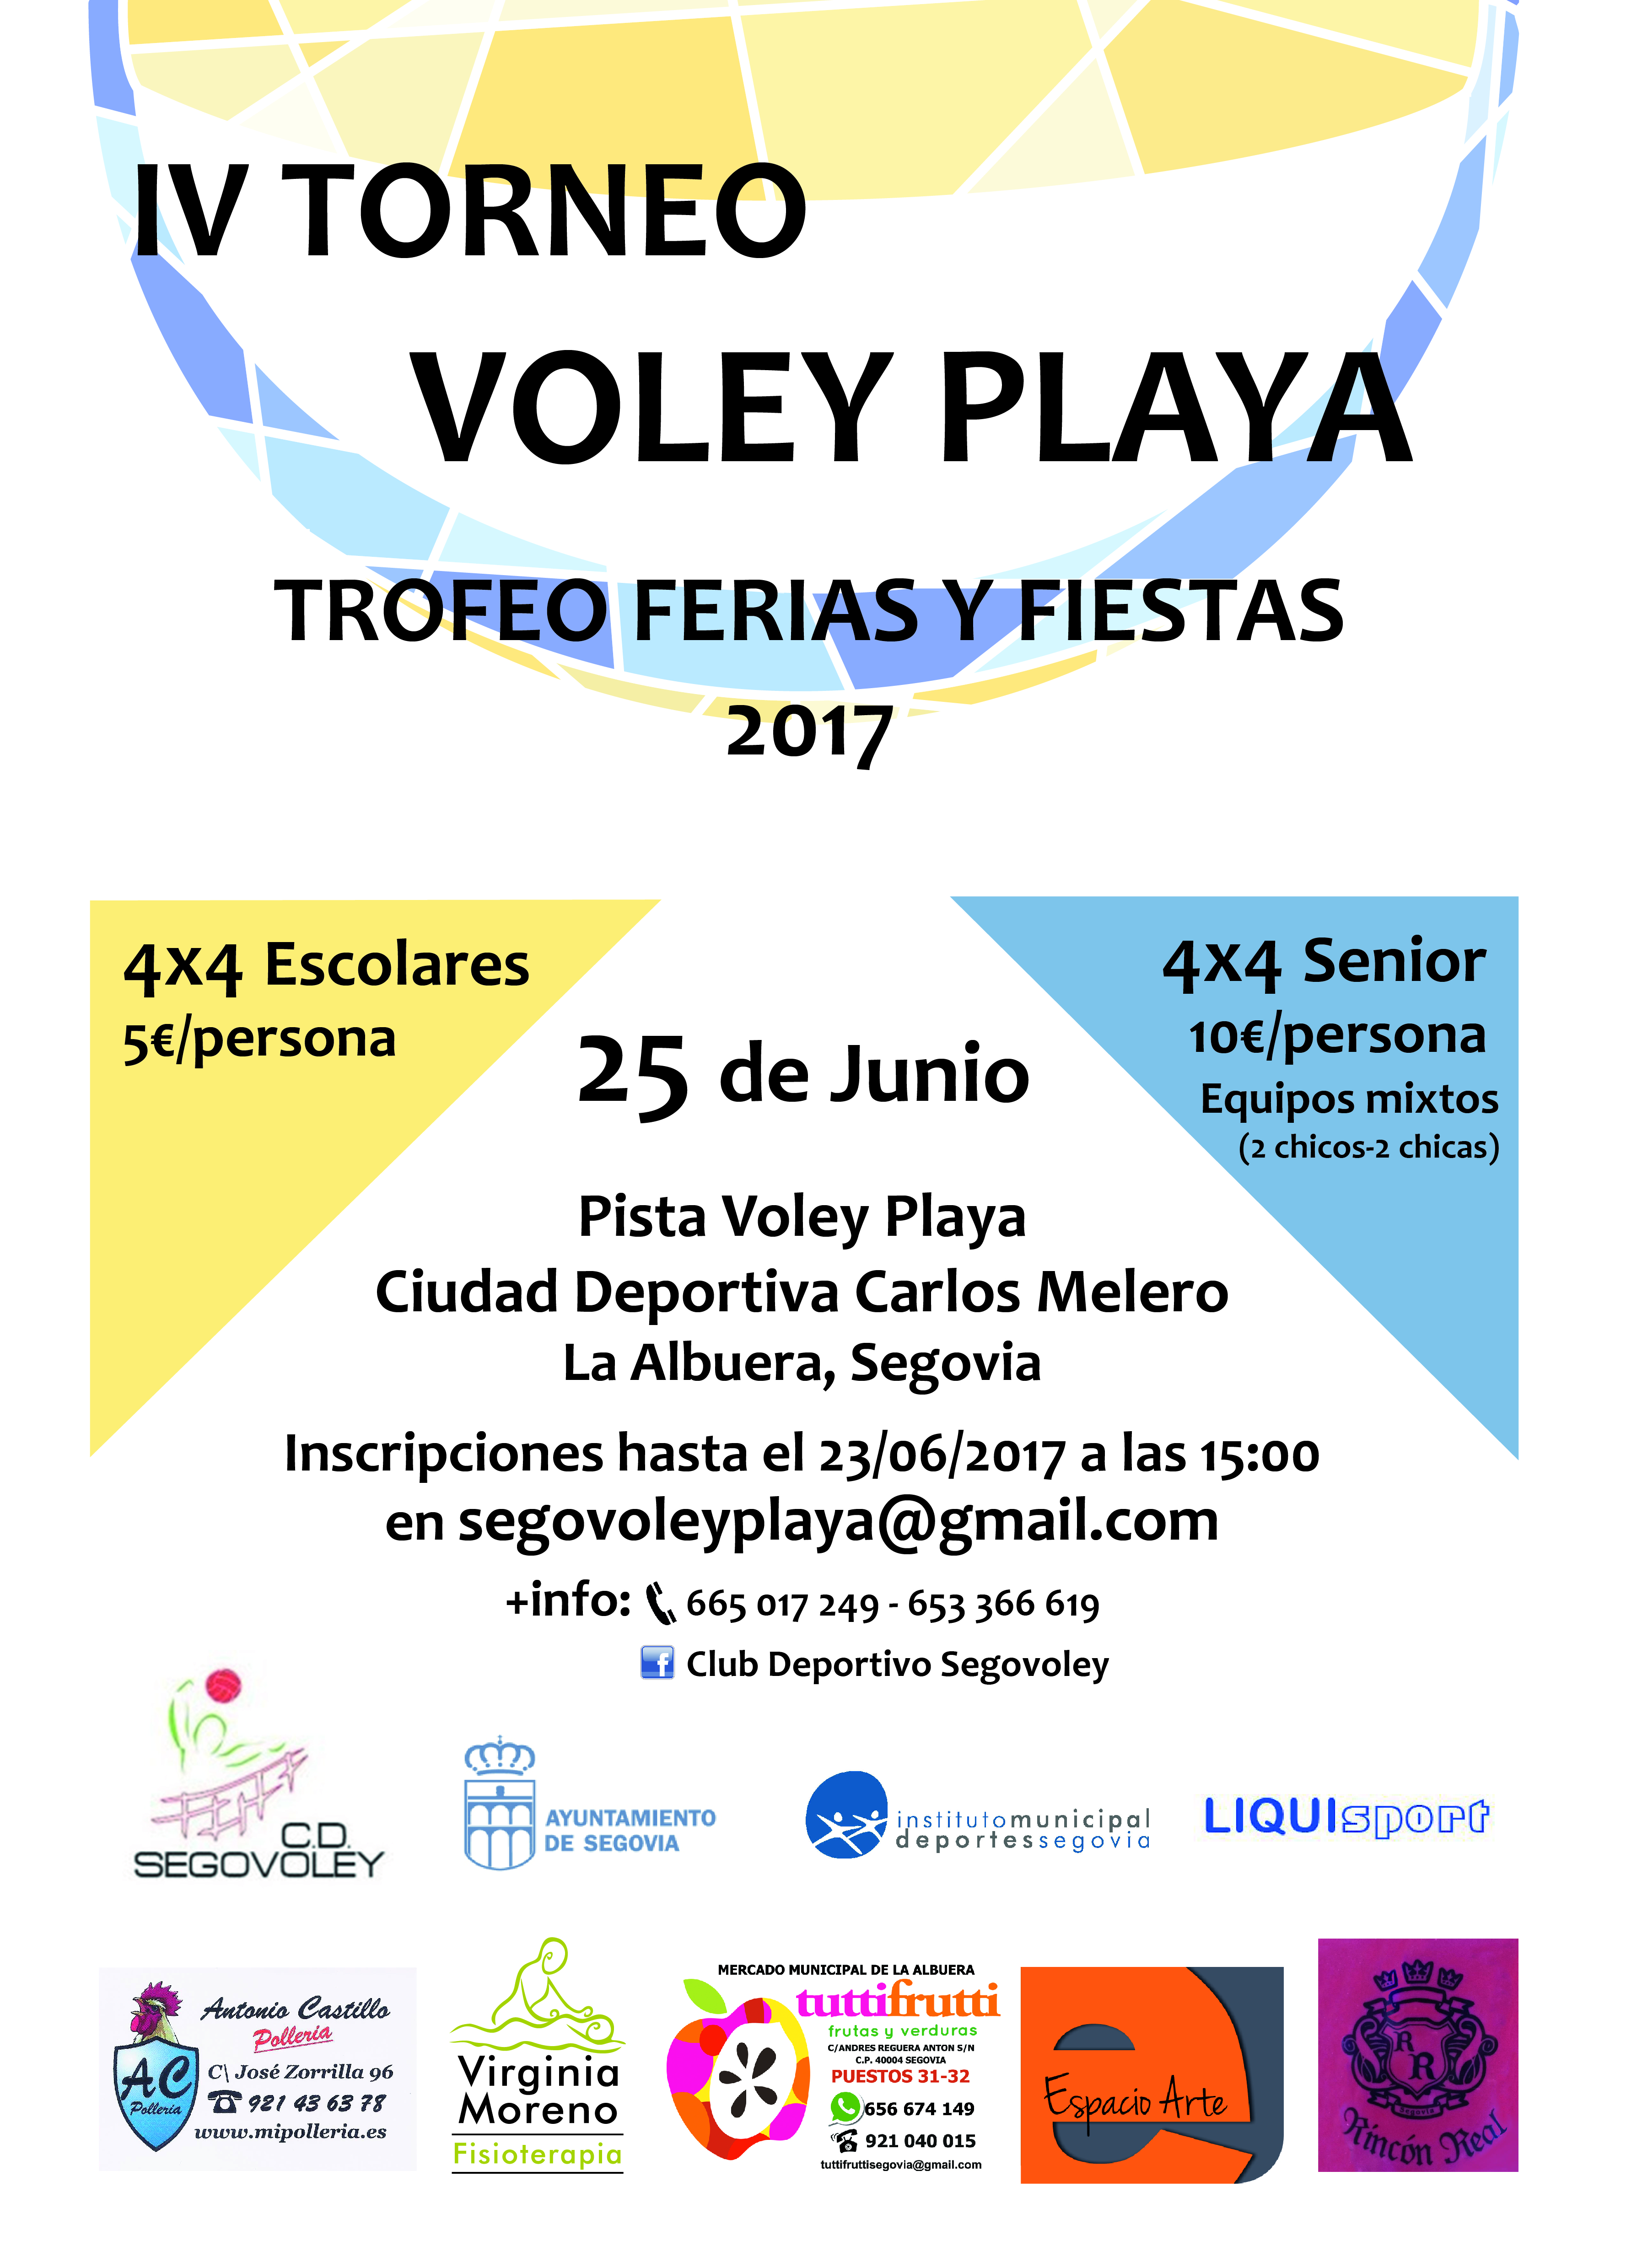 Ferias y Fiestas 2017: Torneo de Voley Playa